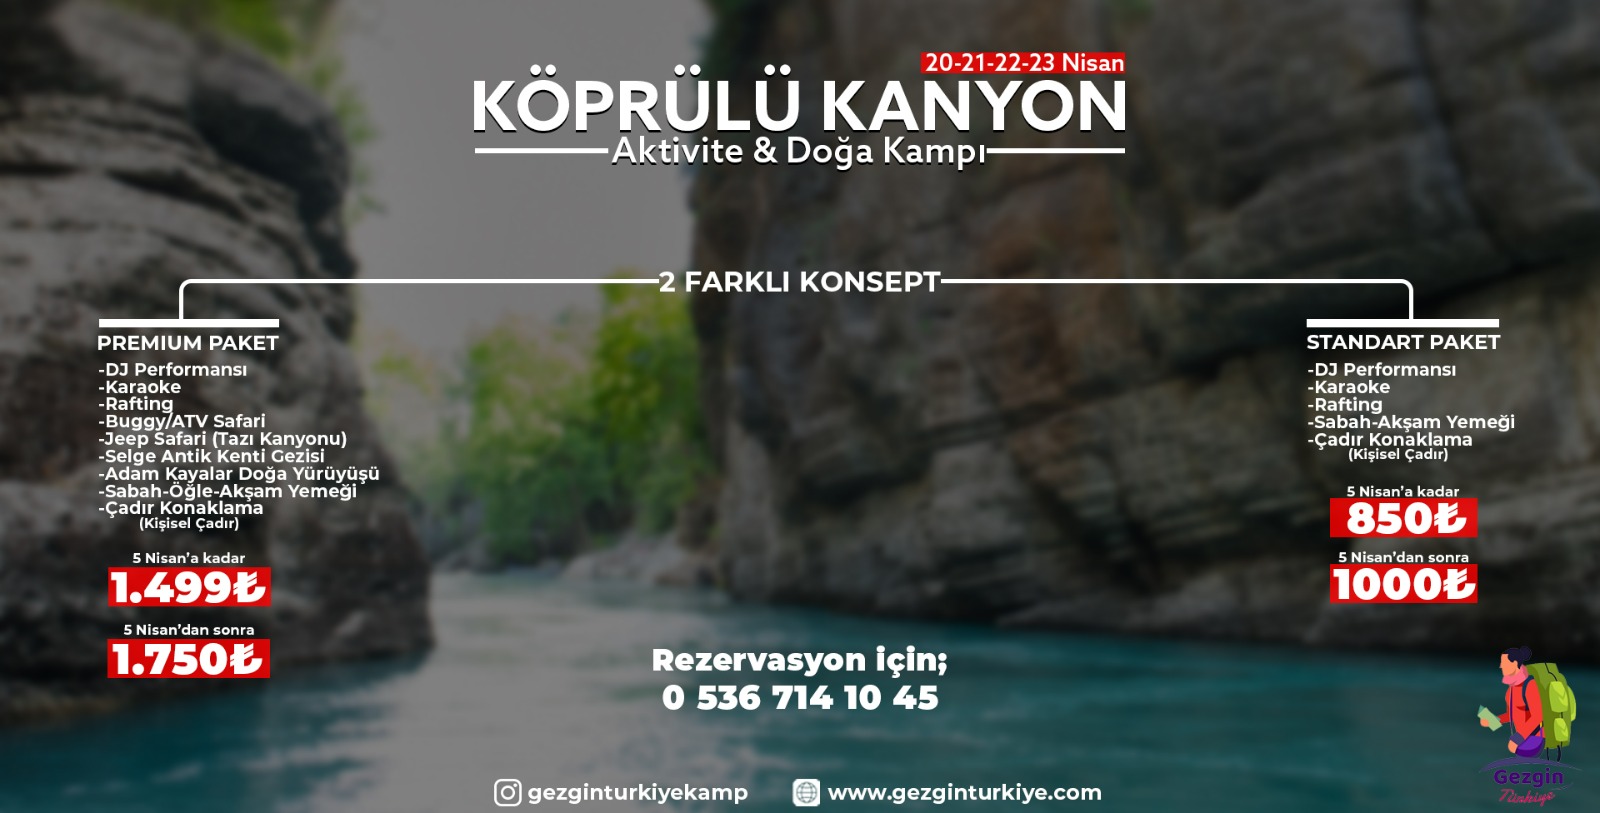 Antalya köprülü kanyon aktivite ve doğa kampı etkinliği